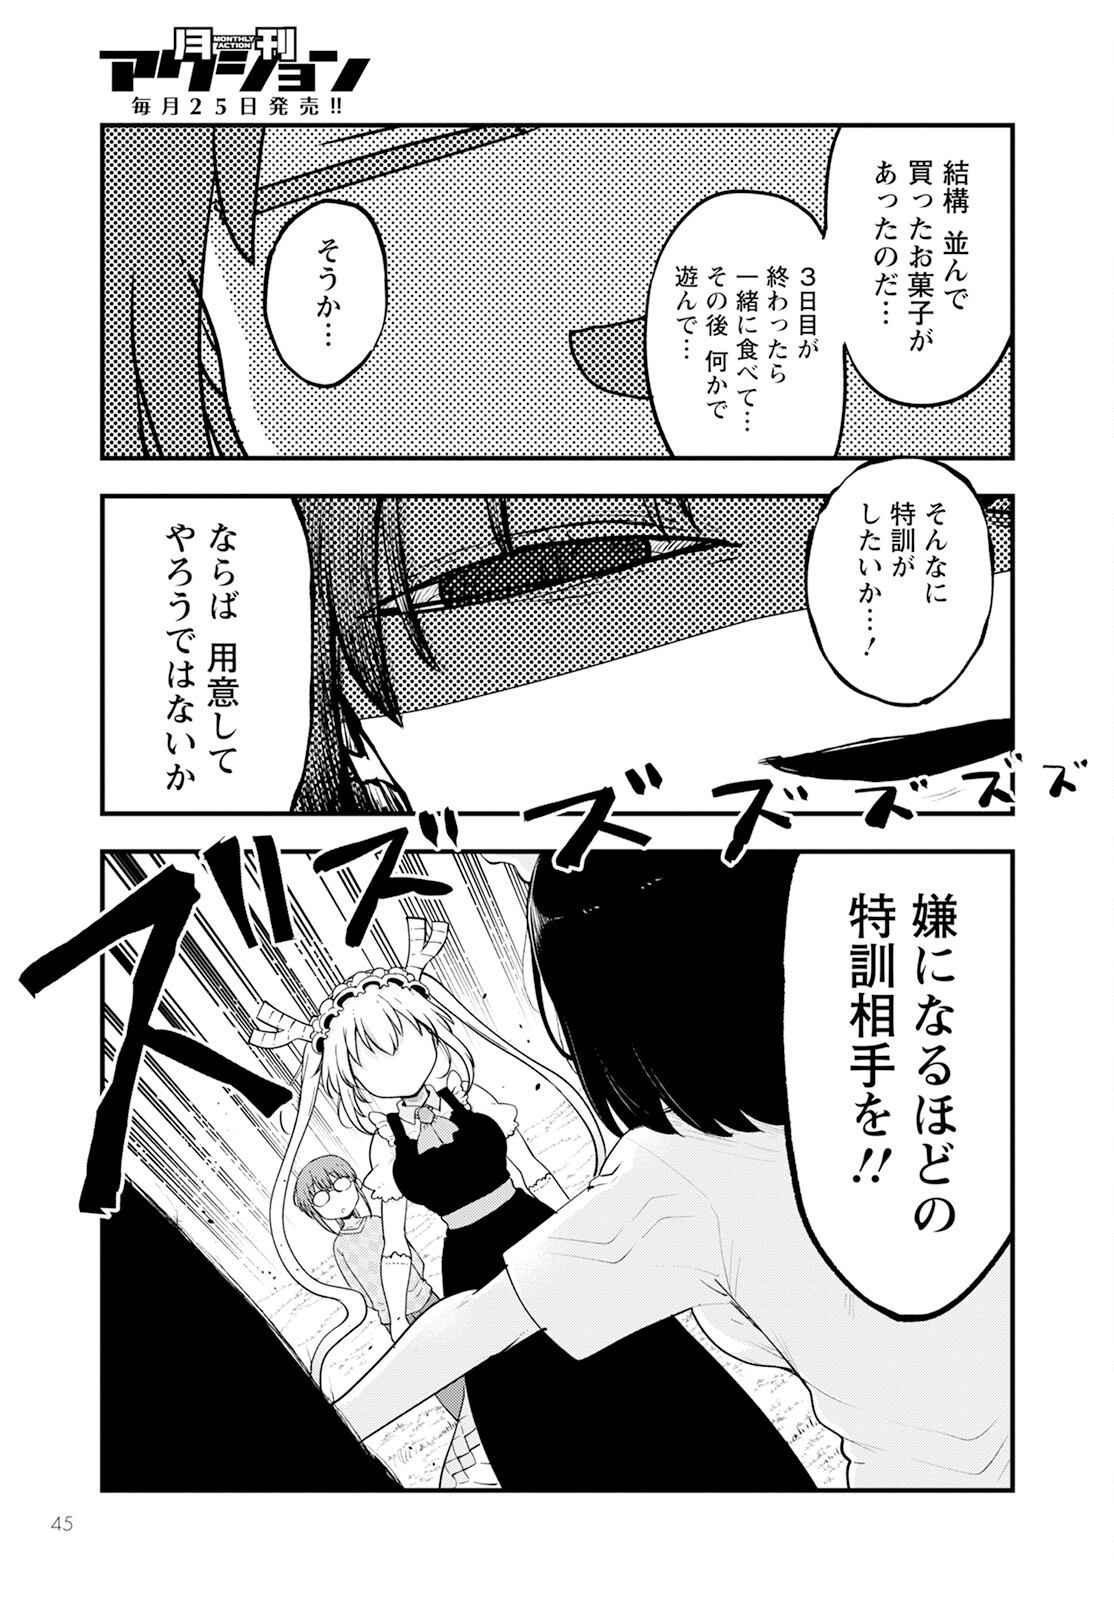 Kobayashi-san Chi no Maid Dragon - Chapter 138 - Page 13